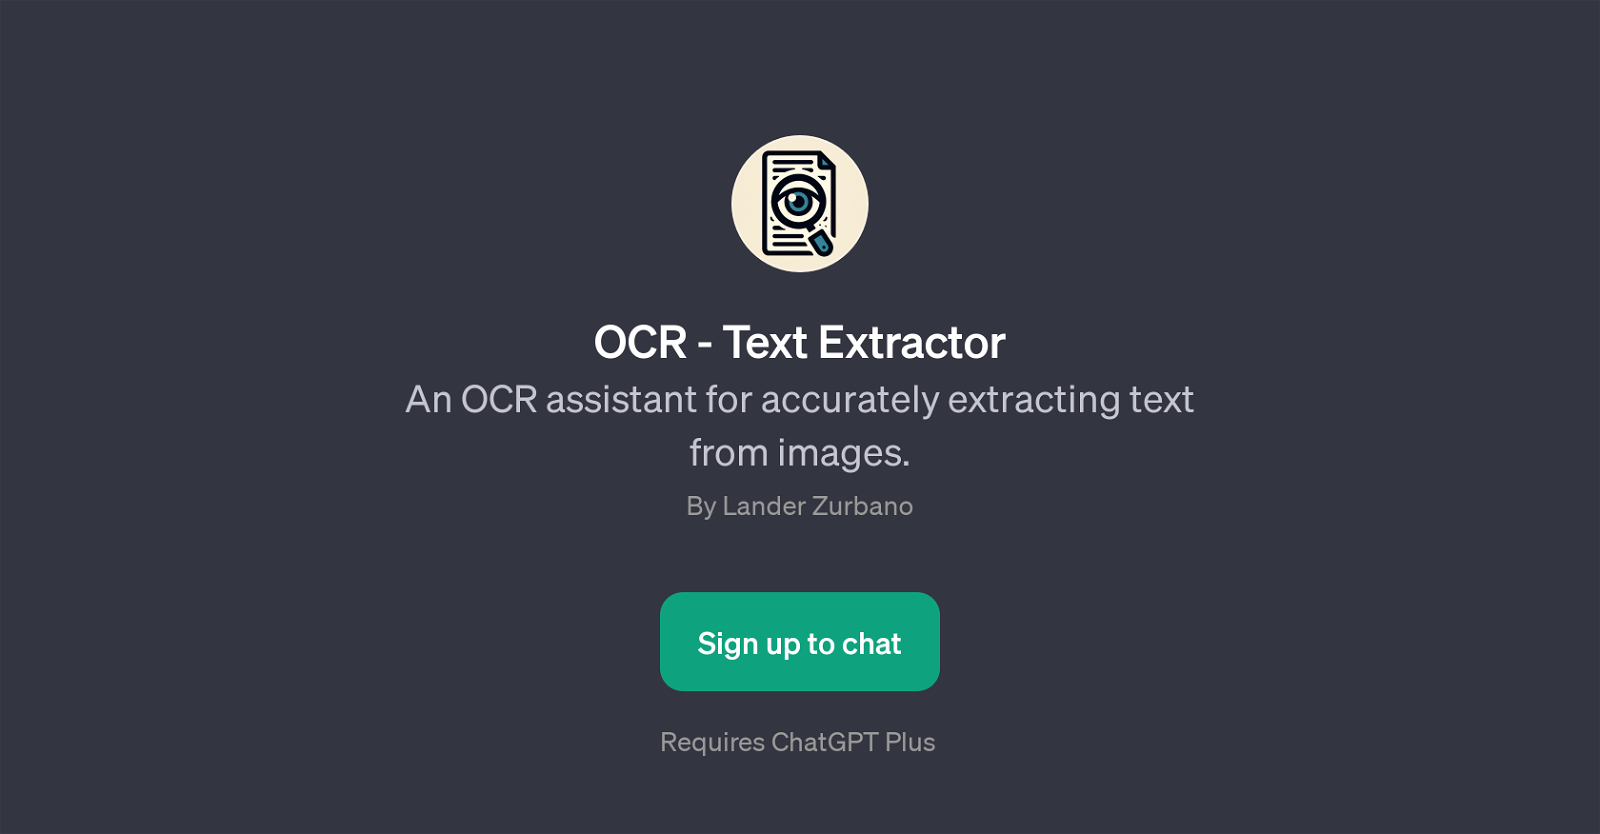 OCR - Text Extractor website